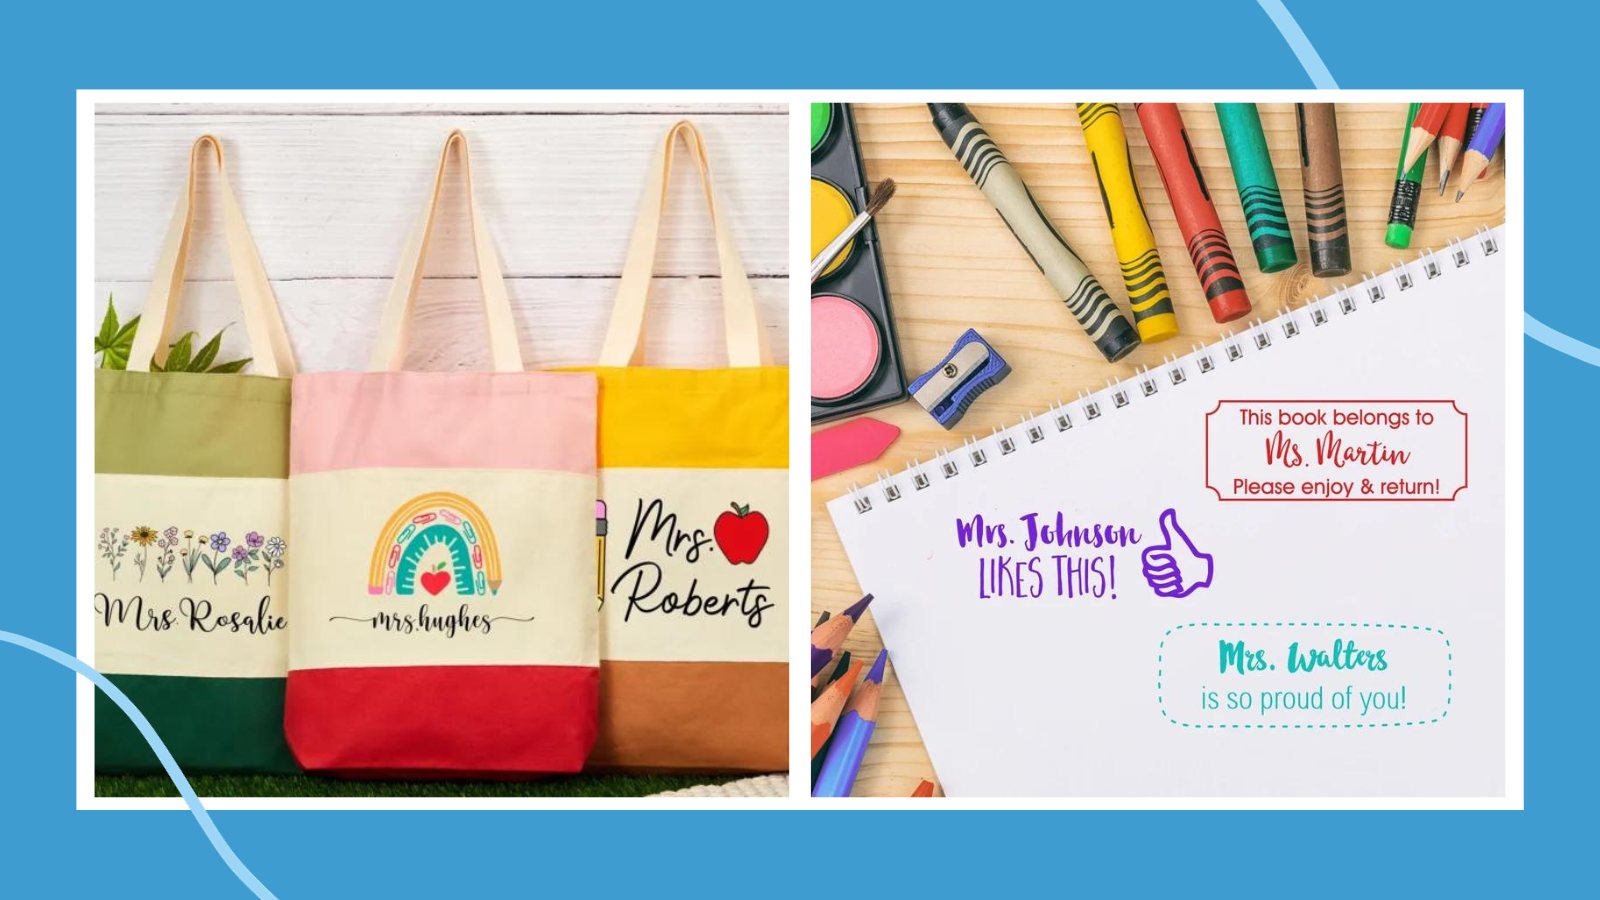 Teacher Pencil Pouch, Personalized Teacher Gifts, Teacher School